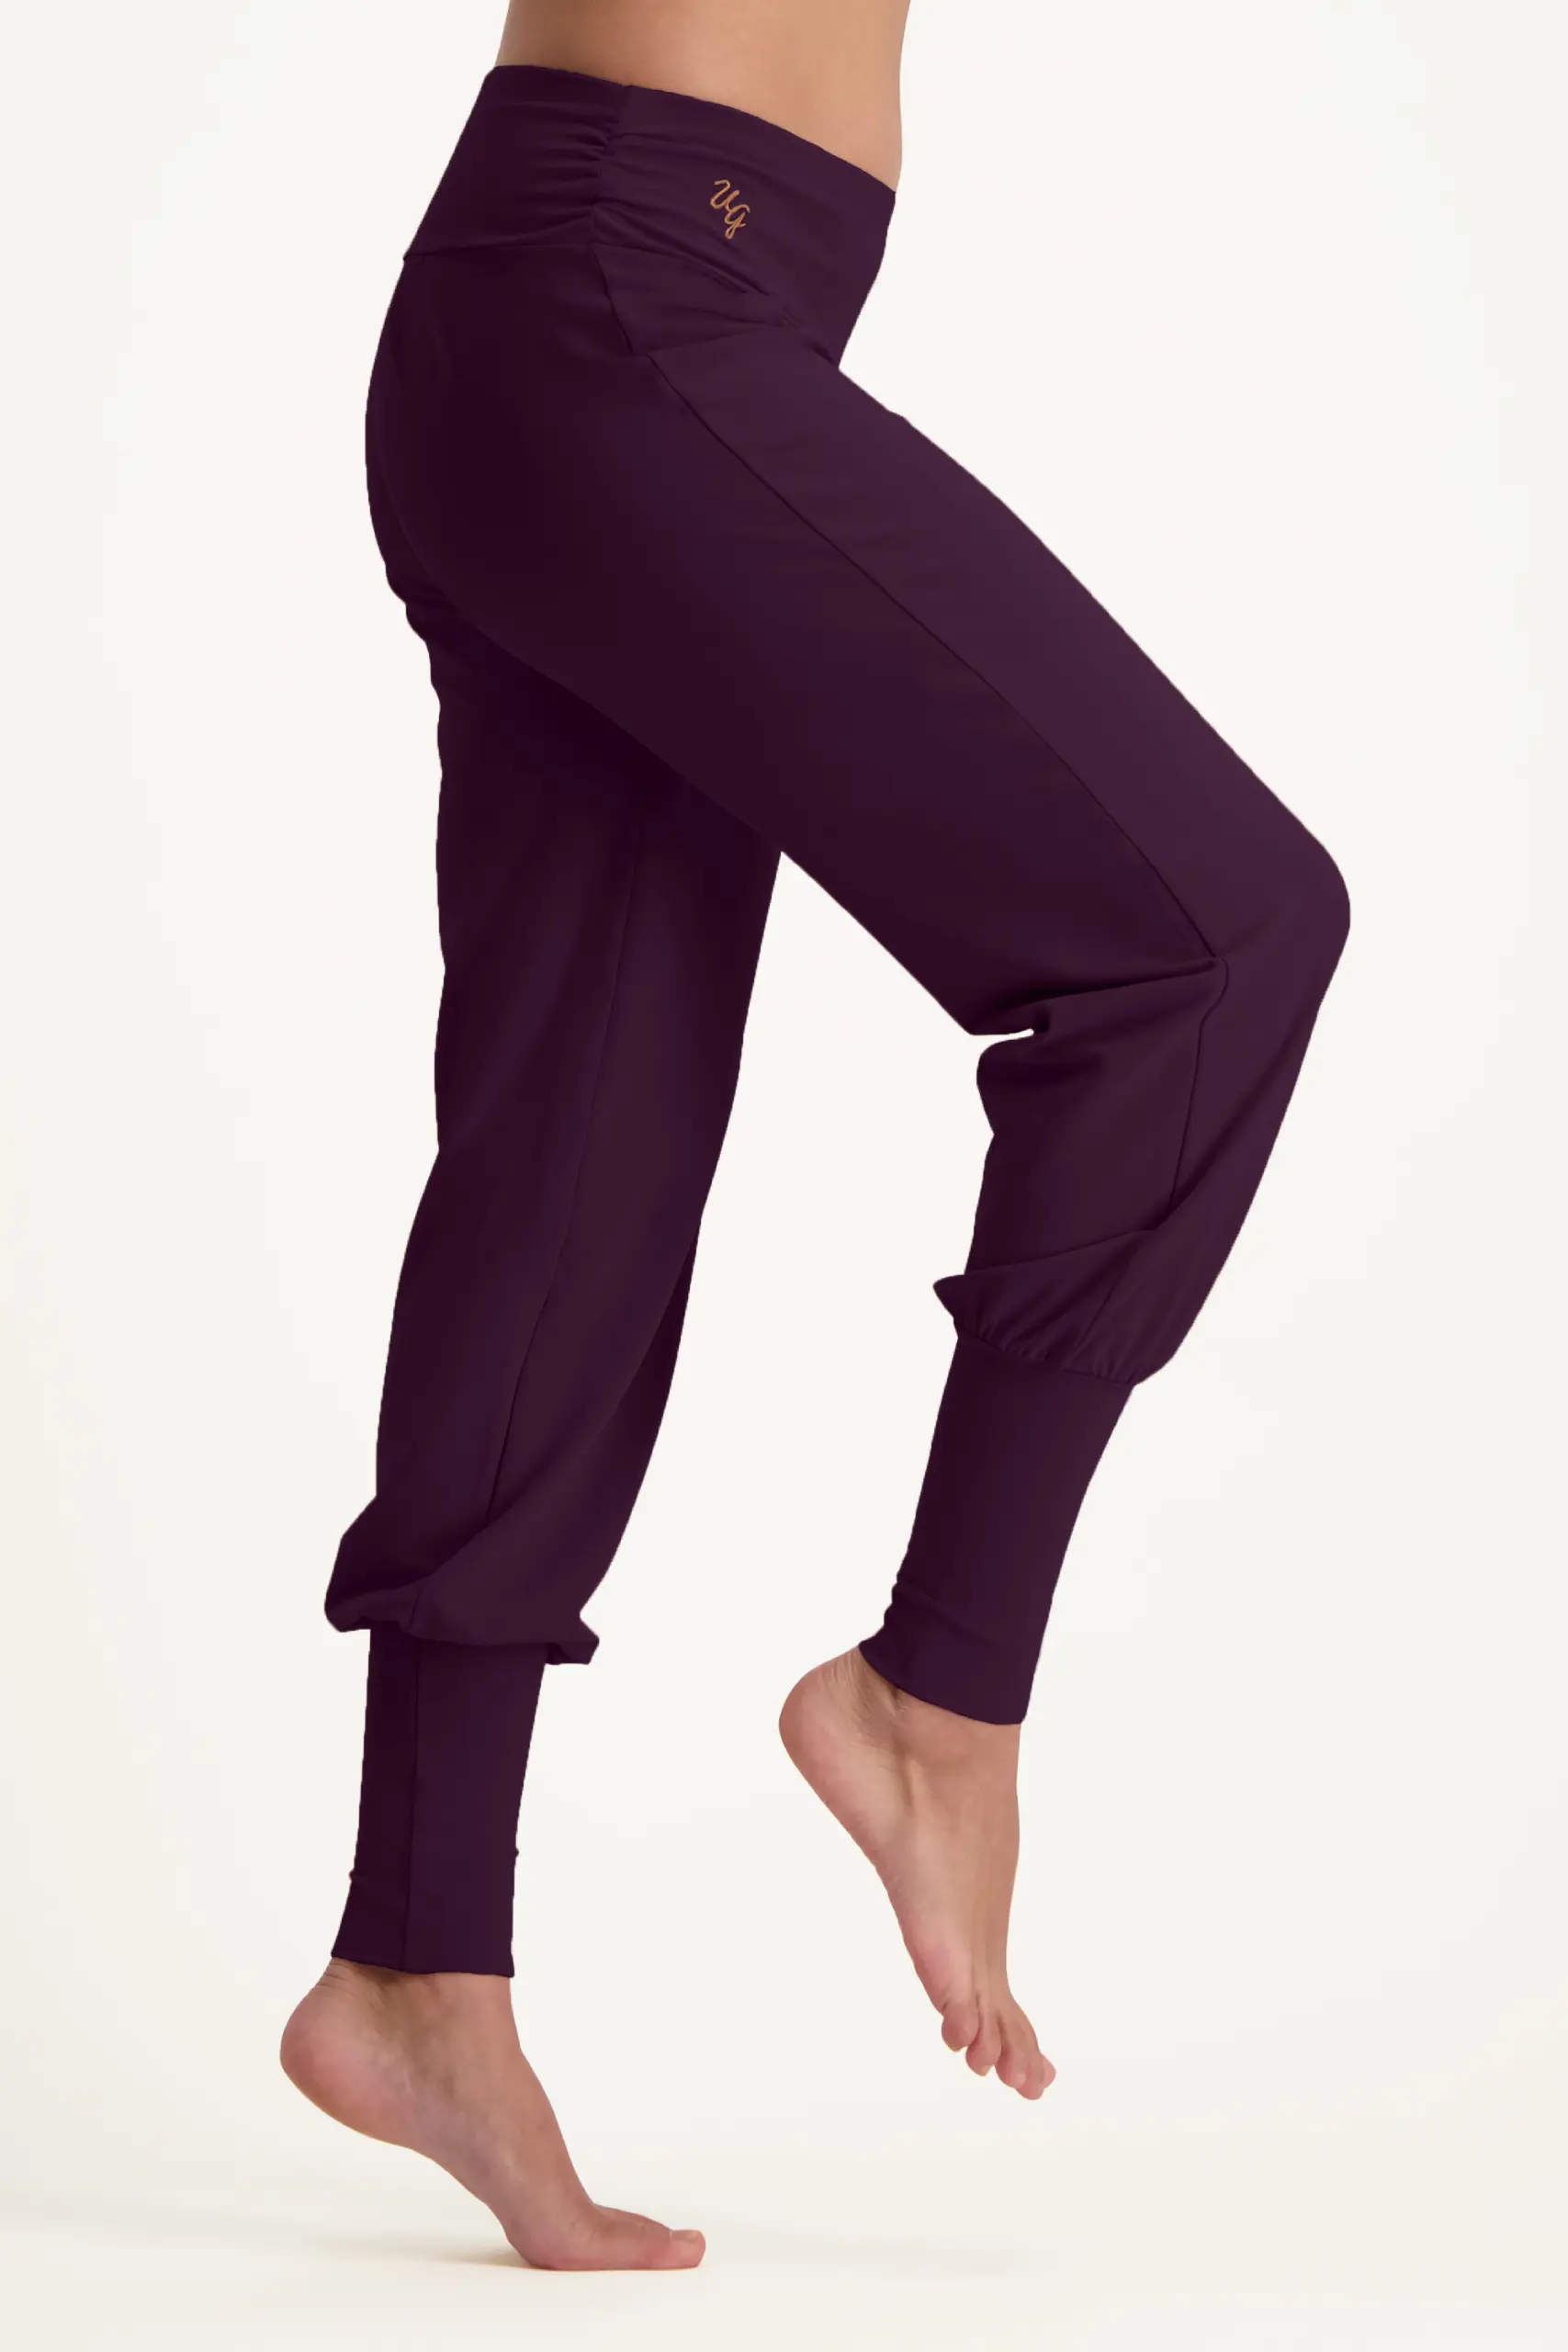 yoga kleding dames - Wat trek je aan voor pilates